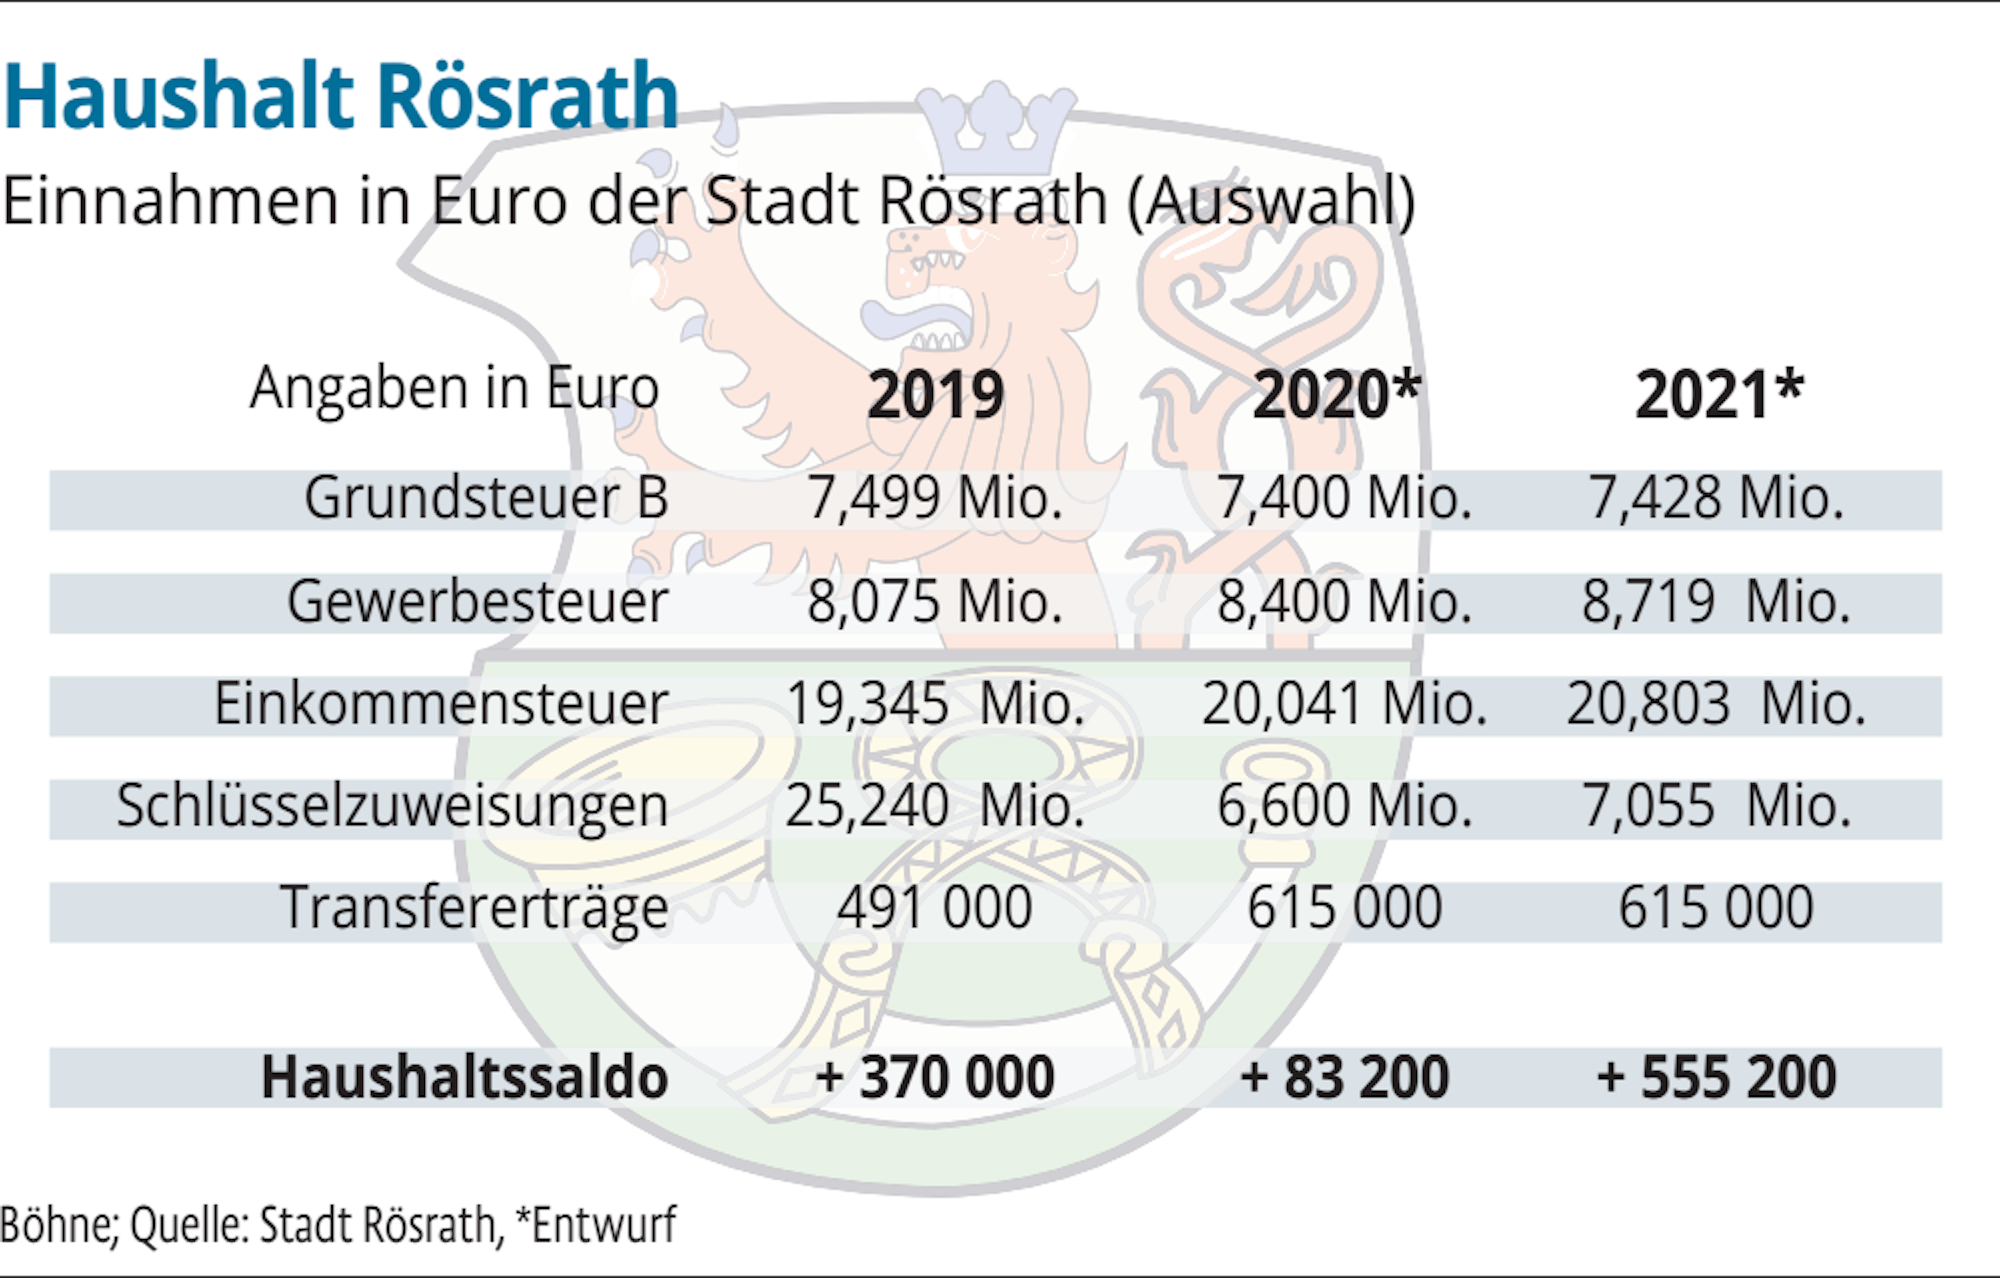 Eine Auswahl der Einnahmen in Euro der Stadt Rösrath.